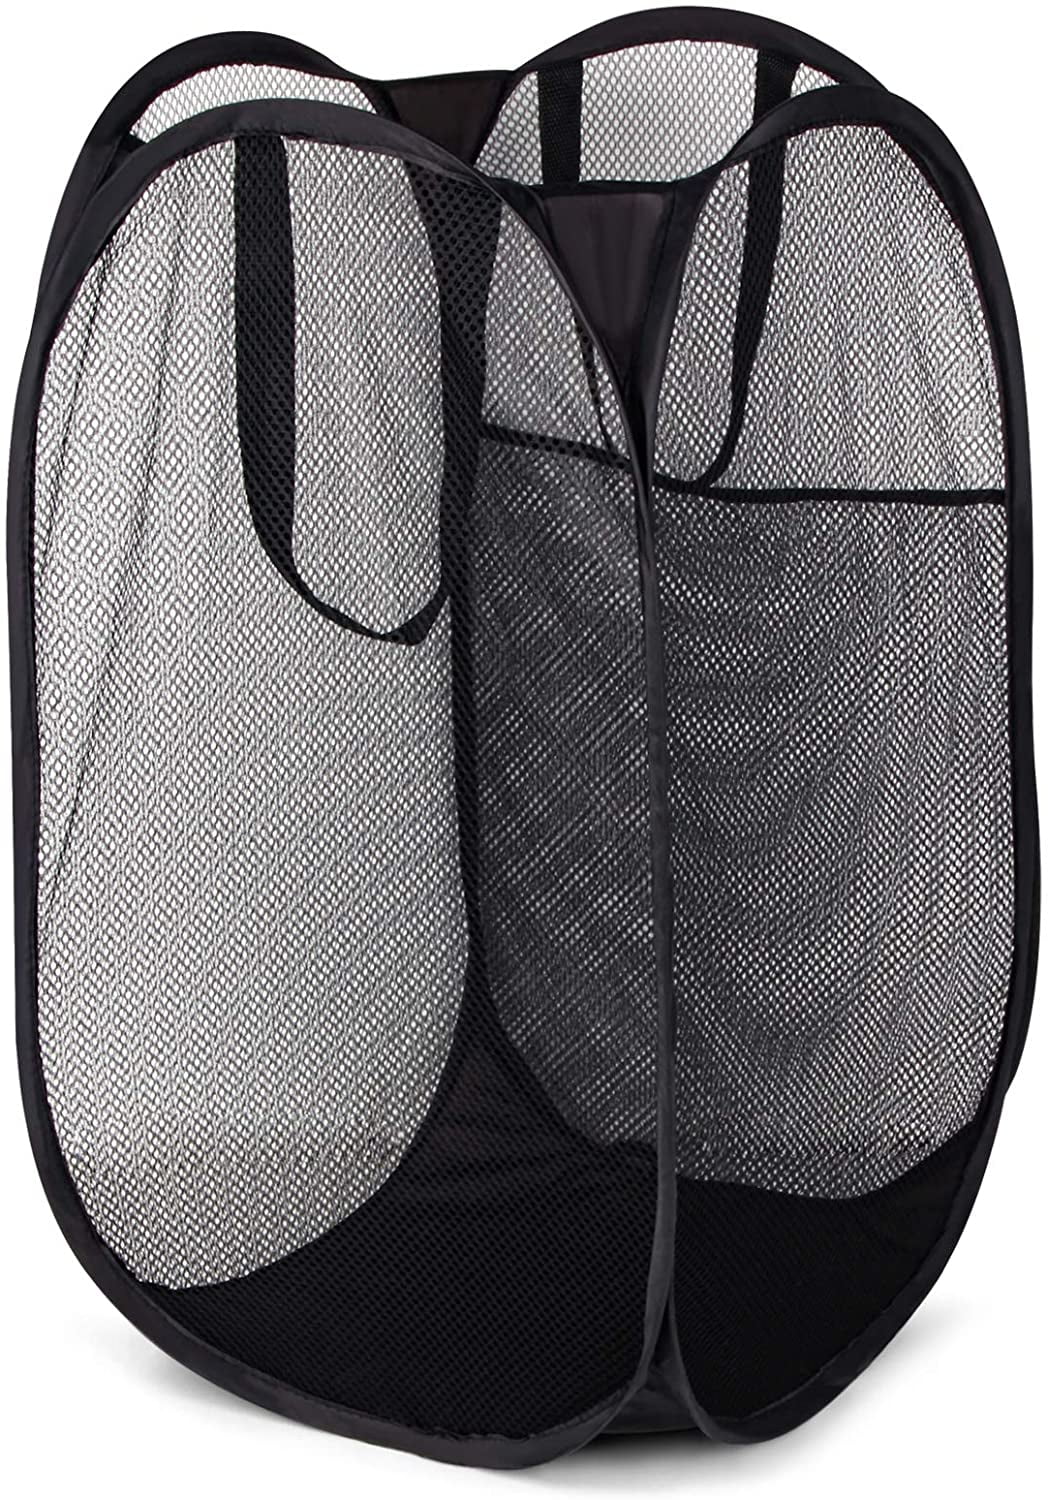 Buy 2 Get 1 Free Portable Laundry Bag Basket Pop Up Mesh Hamper Foldable AD-3504 